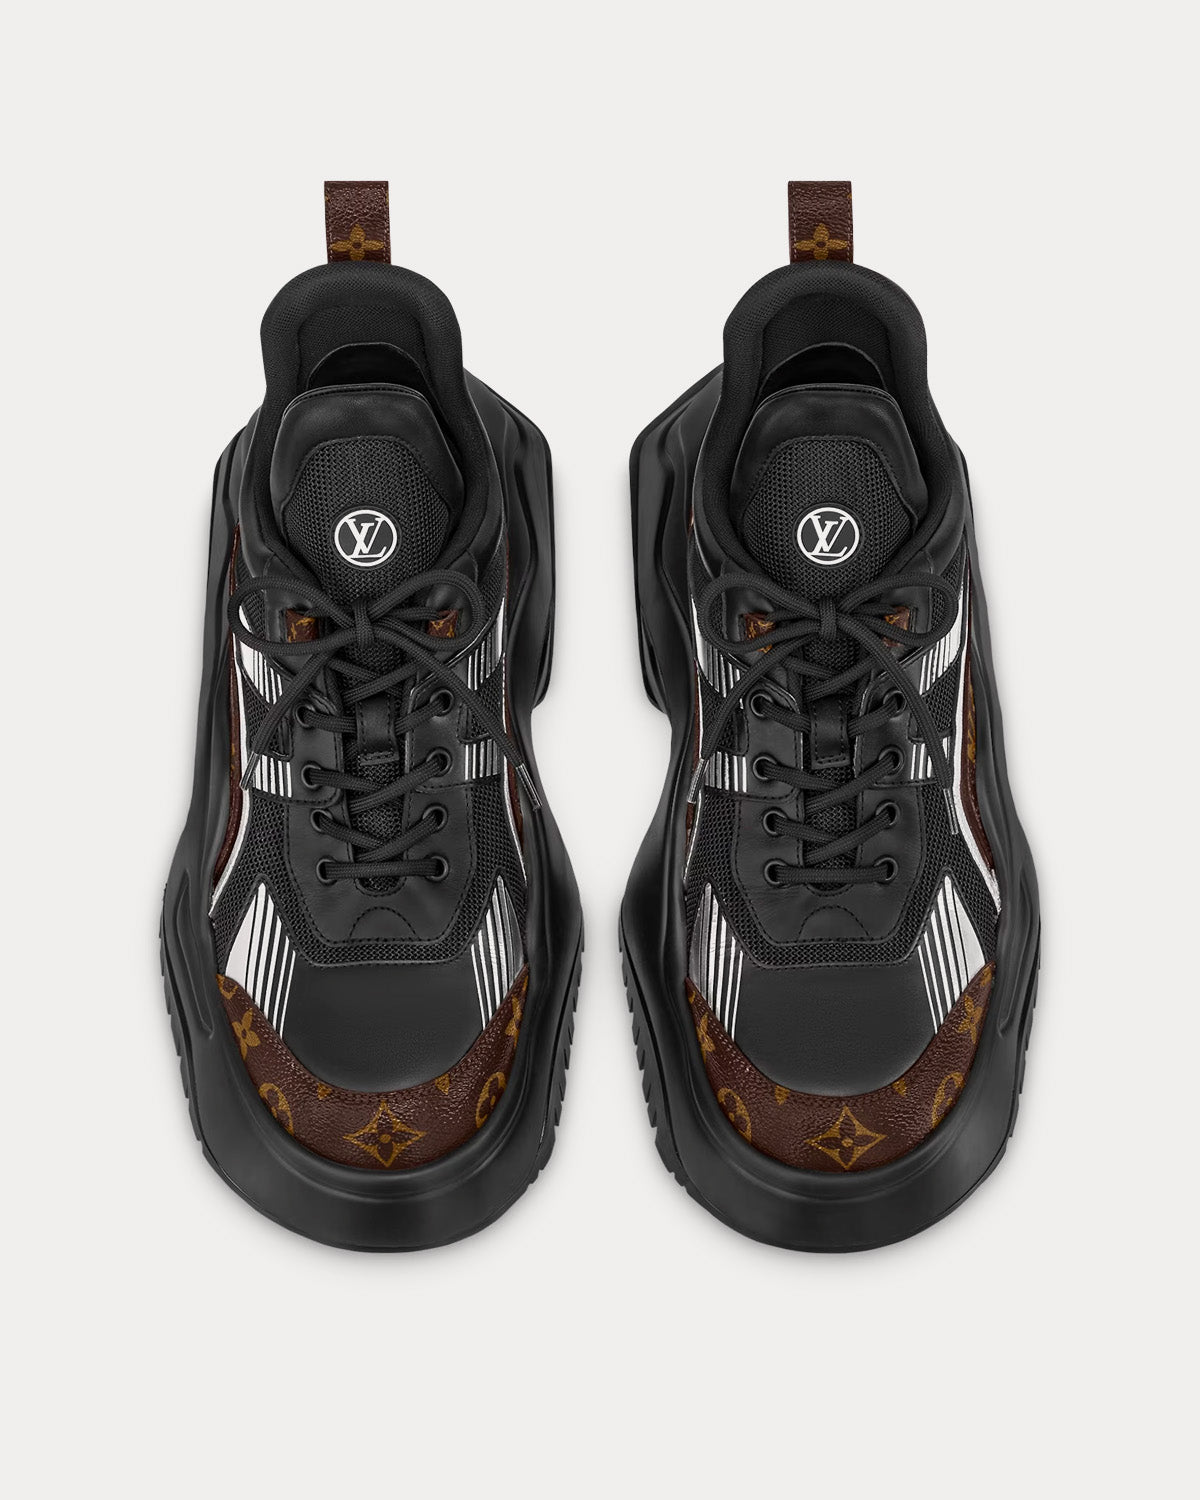 Louis Vuitton - LV Archlight 2.0 Platform Patent Monogram / Black Low Top Sneakers